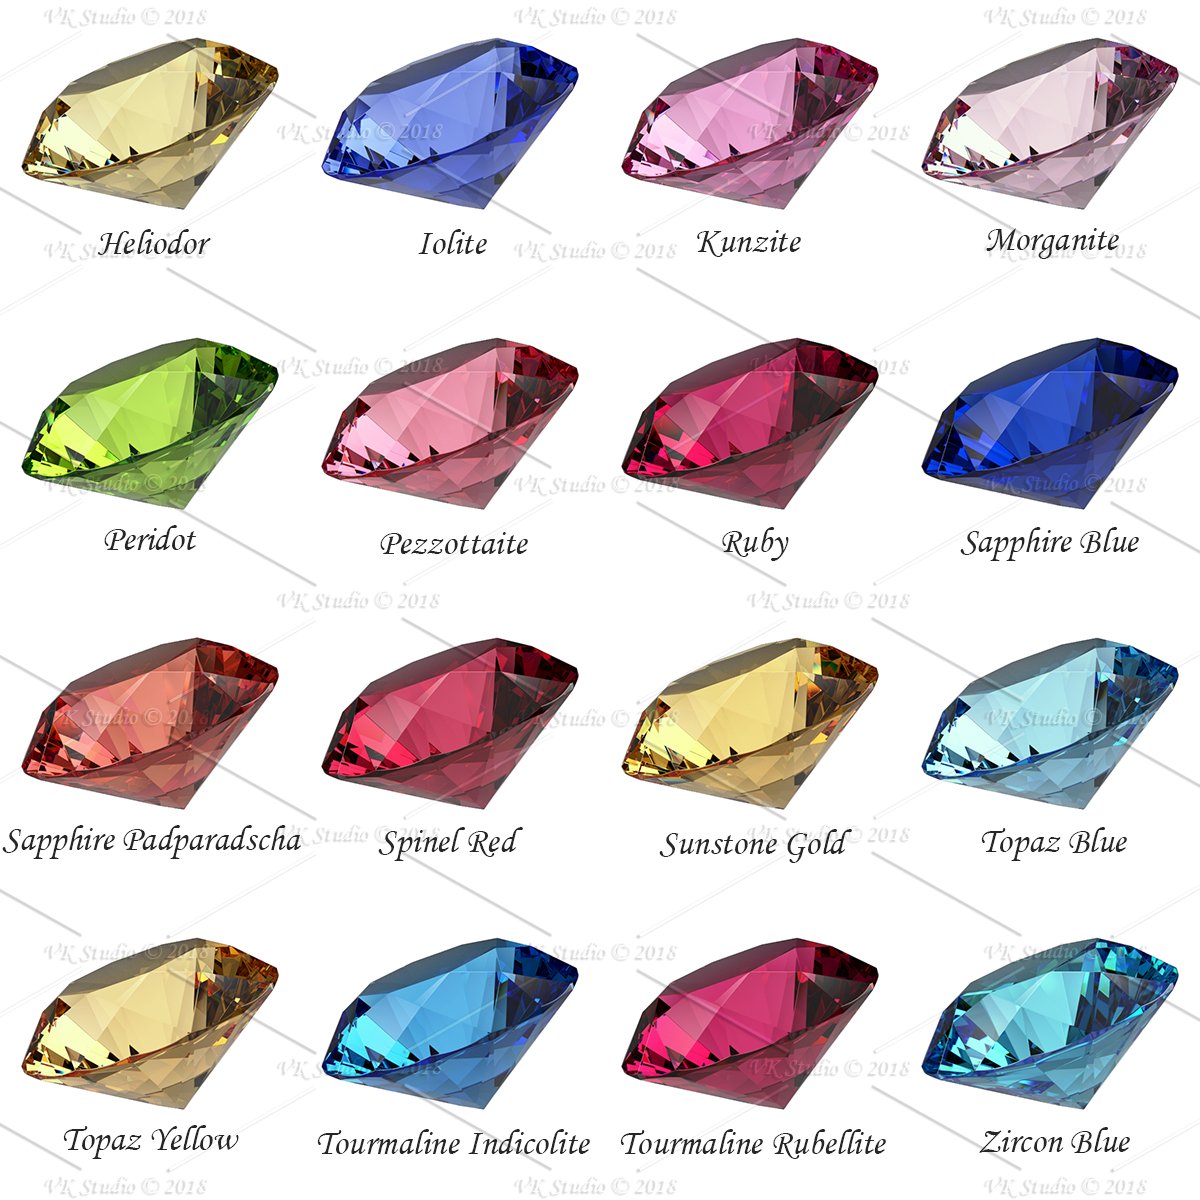 2 gemstones part2 689